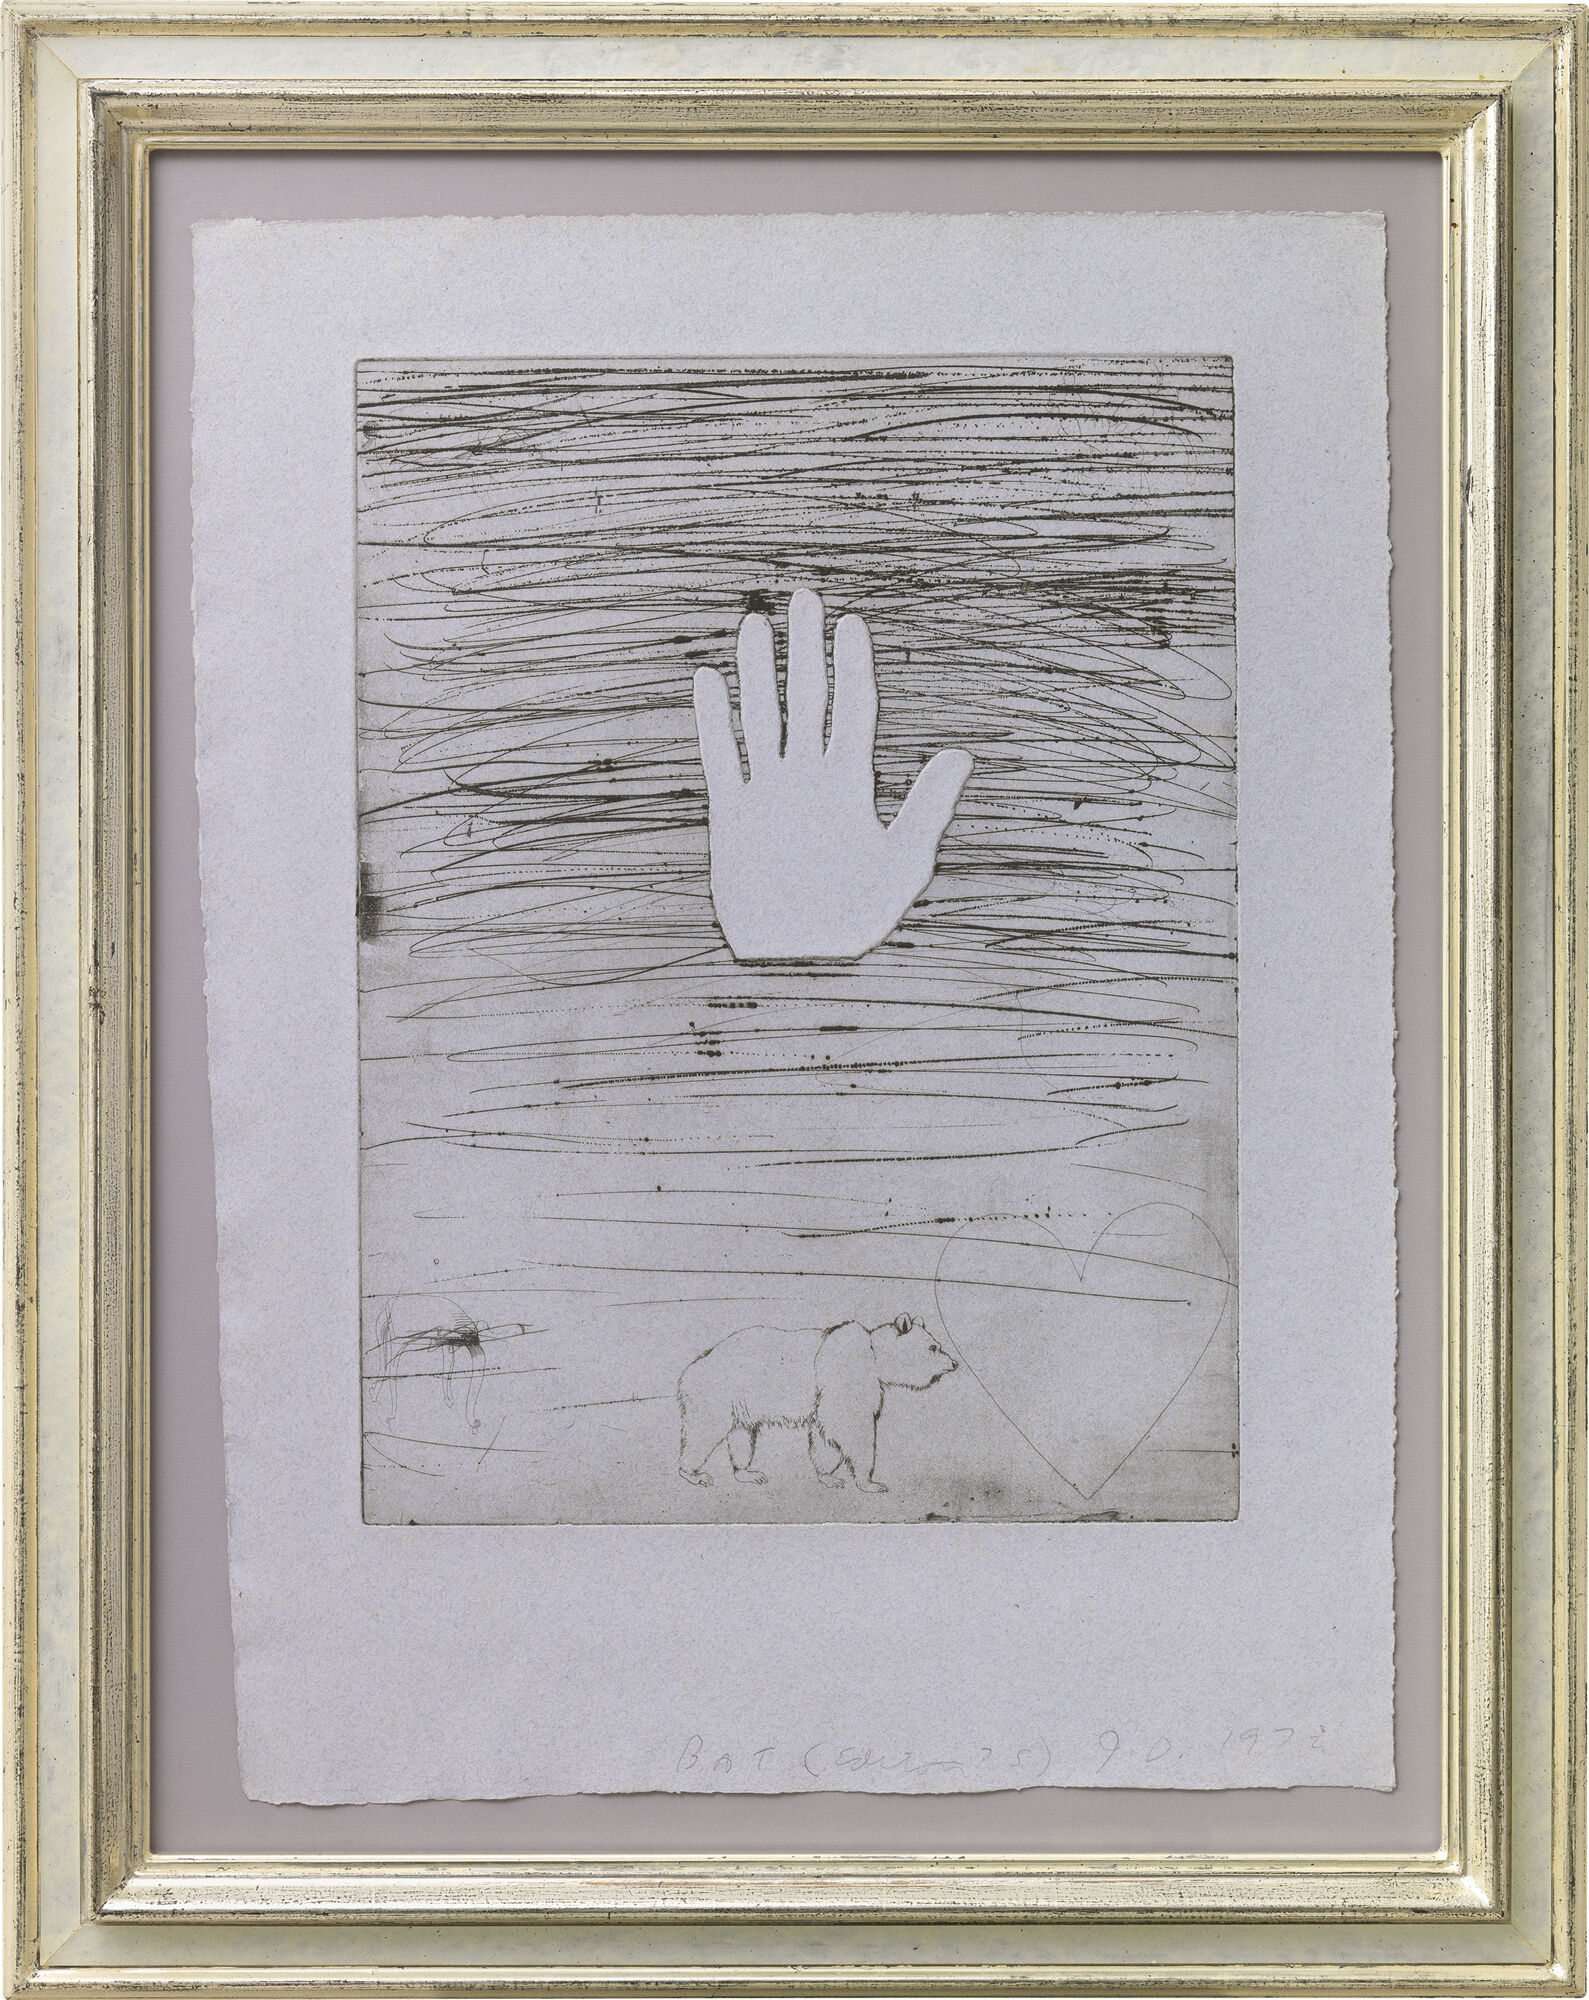 Beeld "Hand" (1972) von Jim Dine